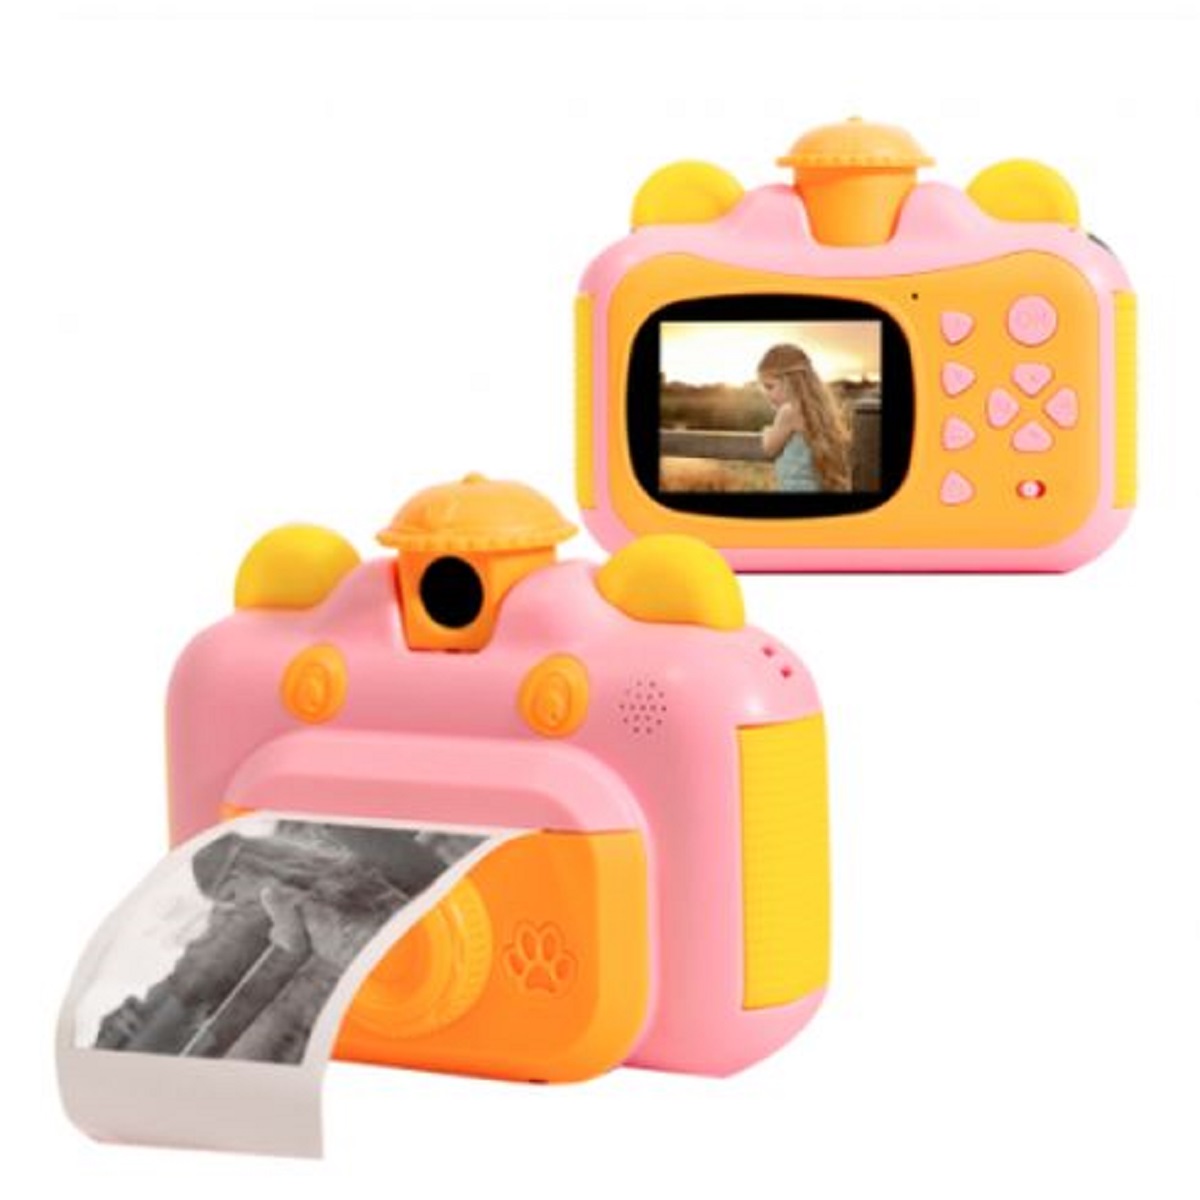 Детский фотоаппарат Leilam с мгновенной печатью фотографий 632714 детский фотоаппарат leilam с мгновенной печатью фотографий